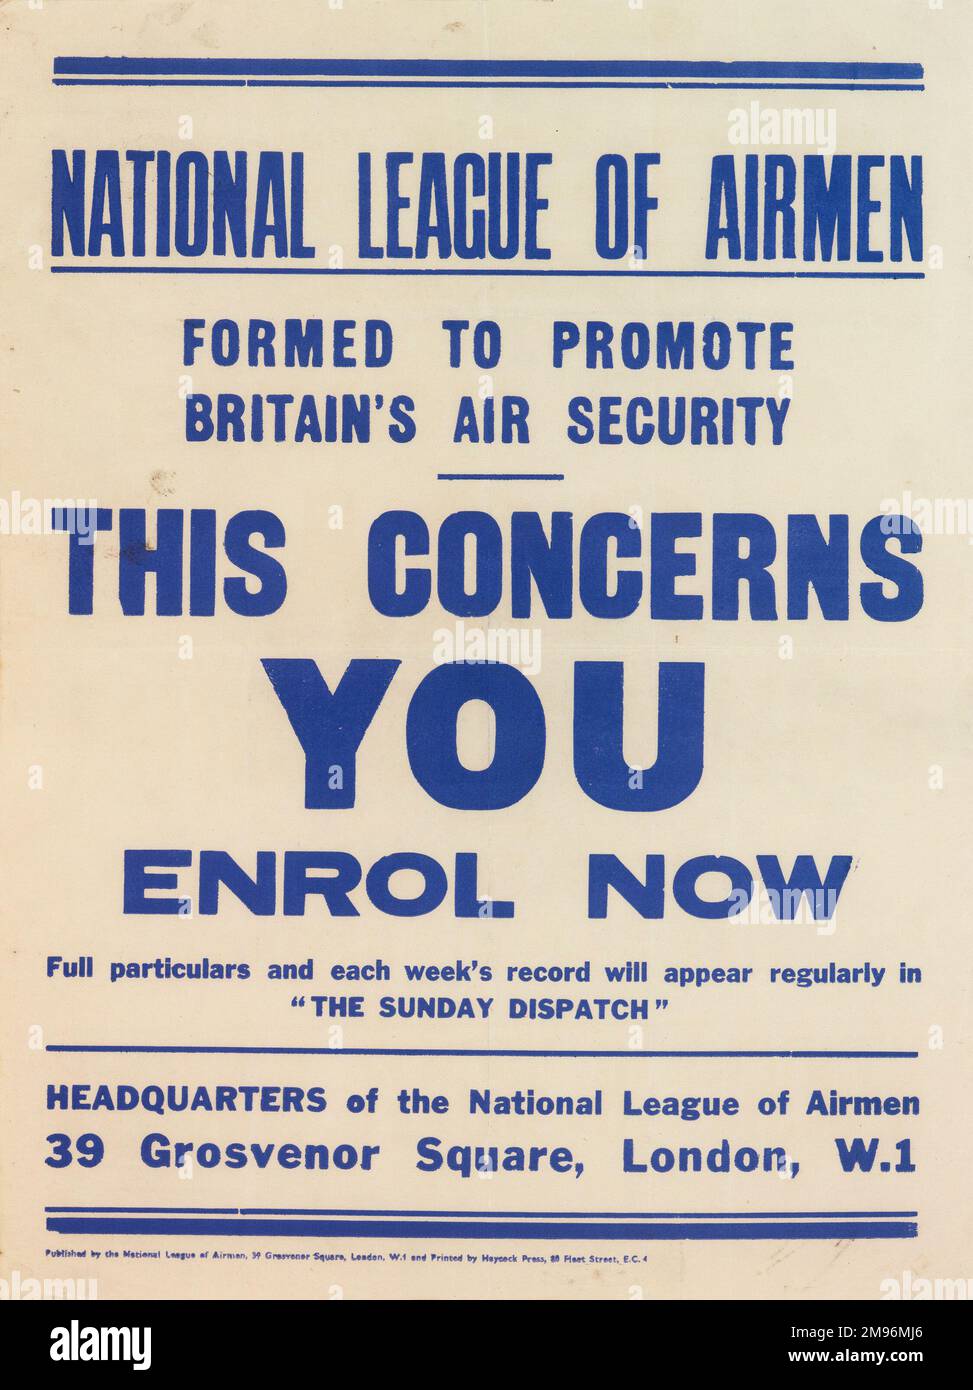 Poster, National League of Airmen, formé pour promouvoir la sécurité aérienne de la Grande-Bretagne. Cela vous concerne, inscrivez-vous dès maintenant. Banque D'Images